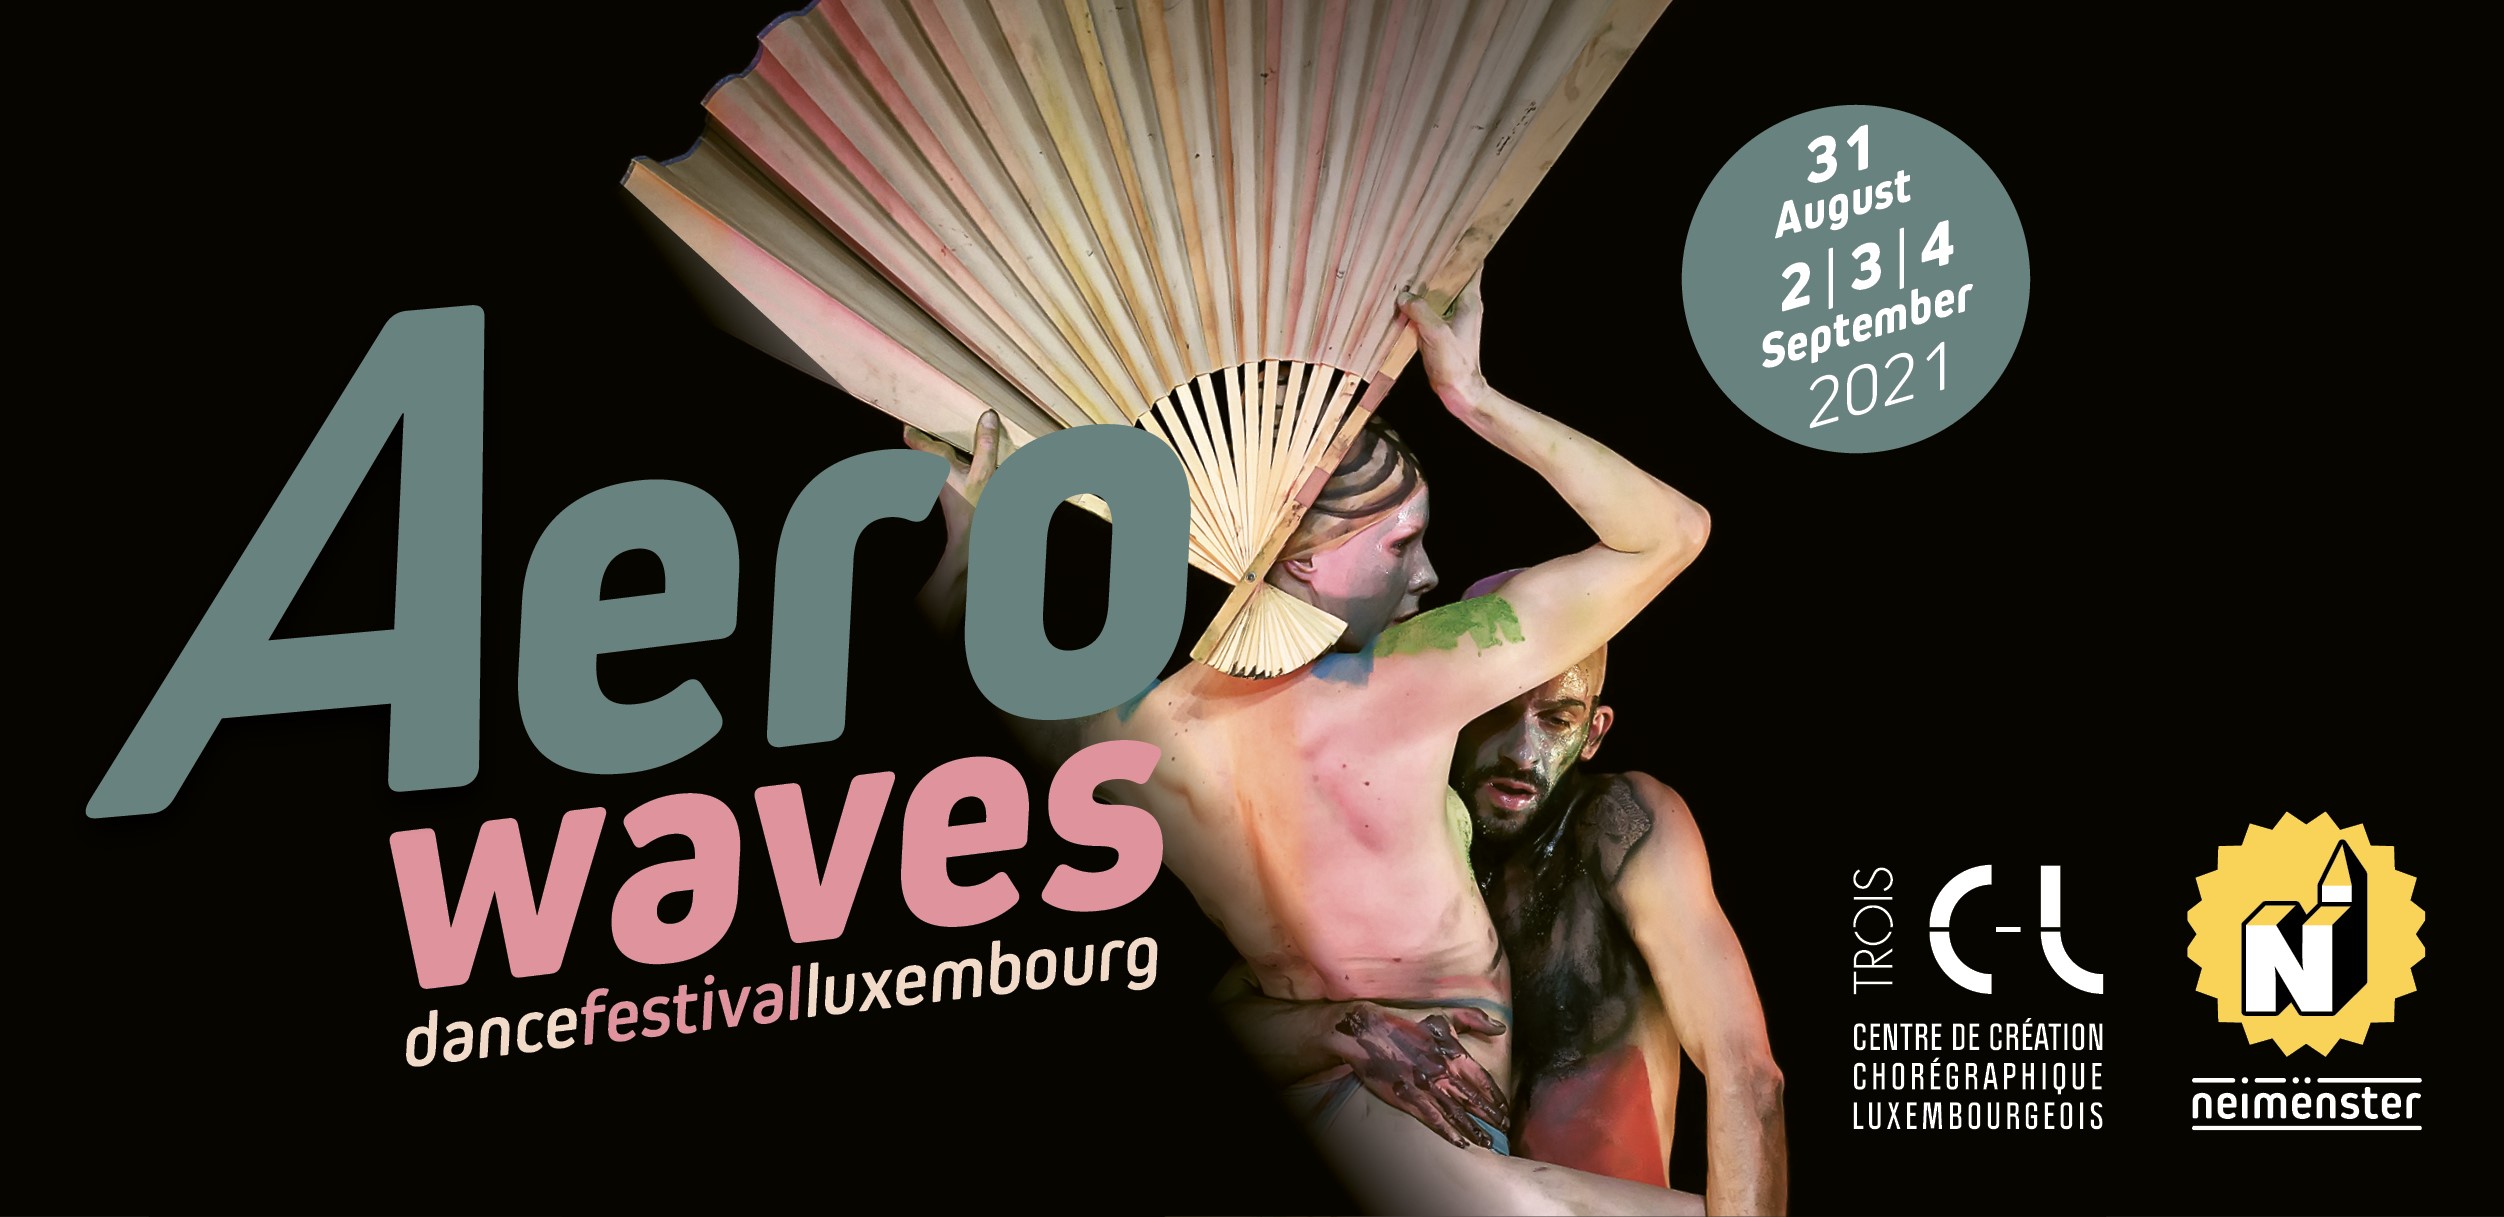 Aerowaves Dance Festival